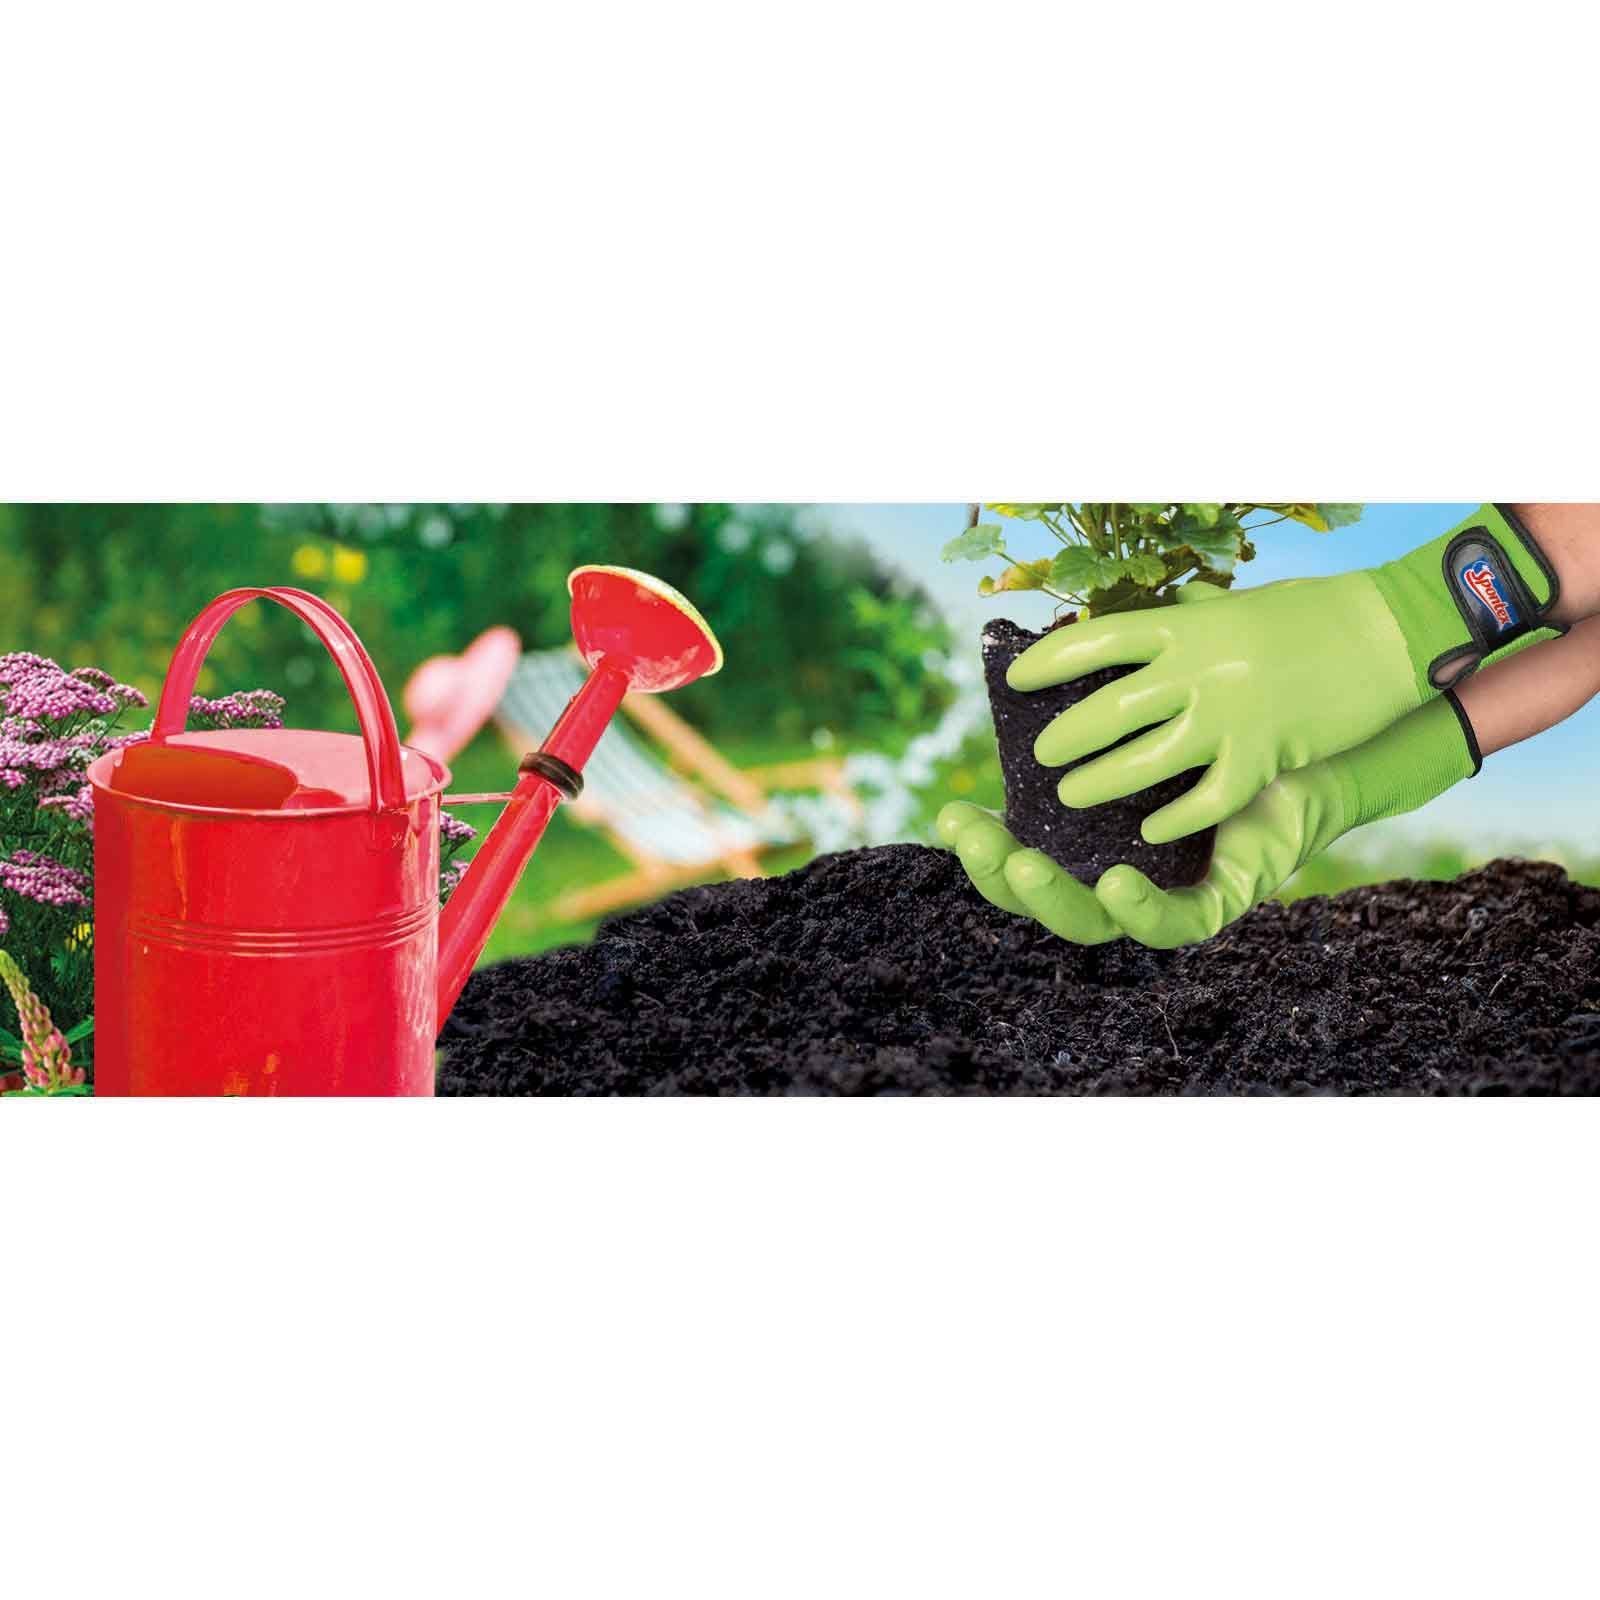 Gartenarbeit, Nitril-Handschuhe (Spar-Set) Gartenhandschuhe Klettverschluss Damenhandschuh, Spontex SPONTEX